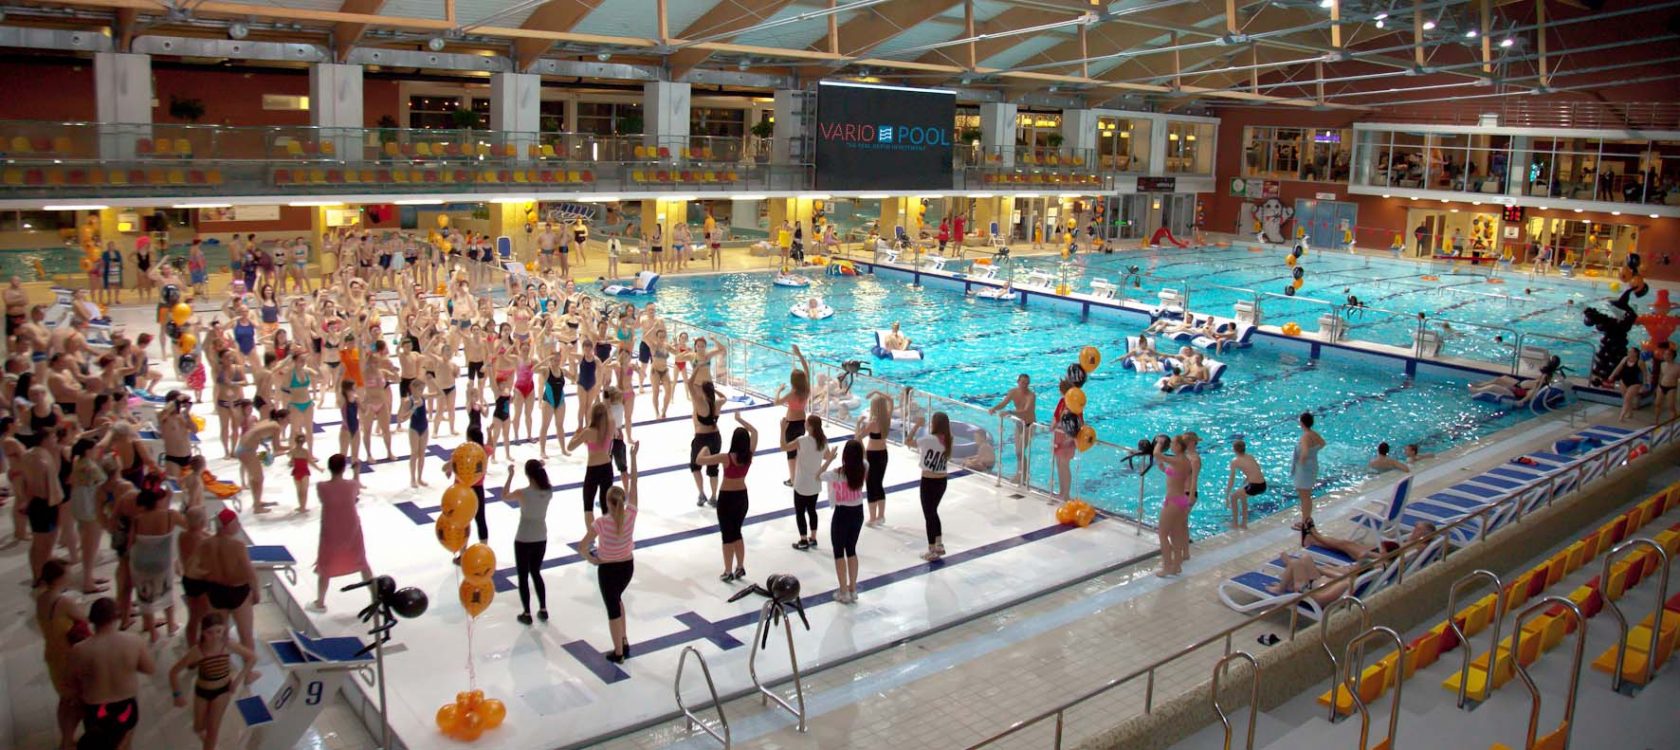 Aquatopia swimming pool in Aalst (Belgium)